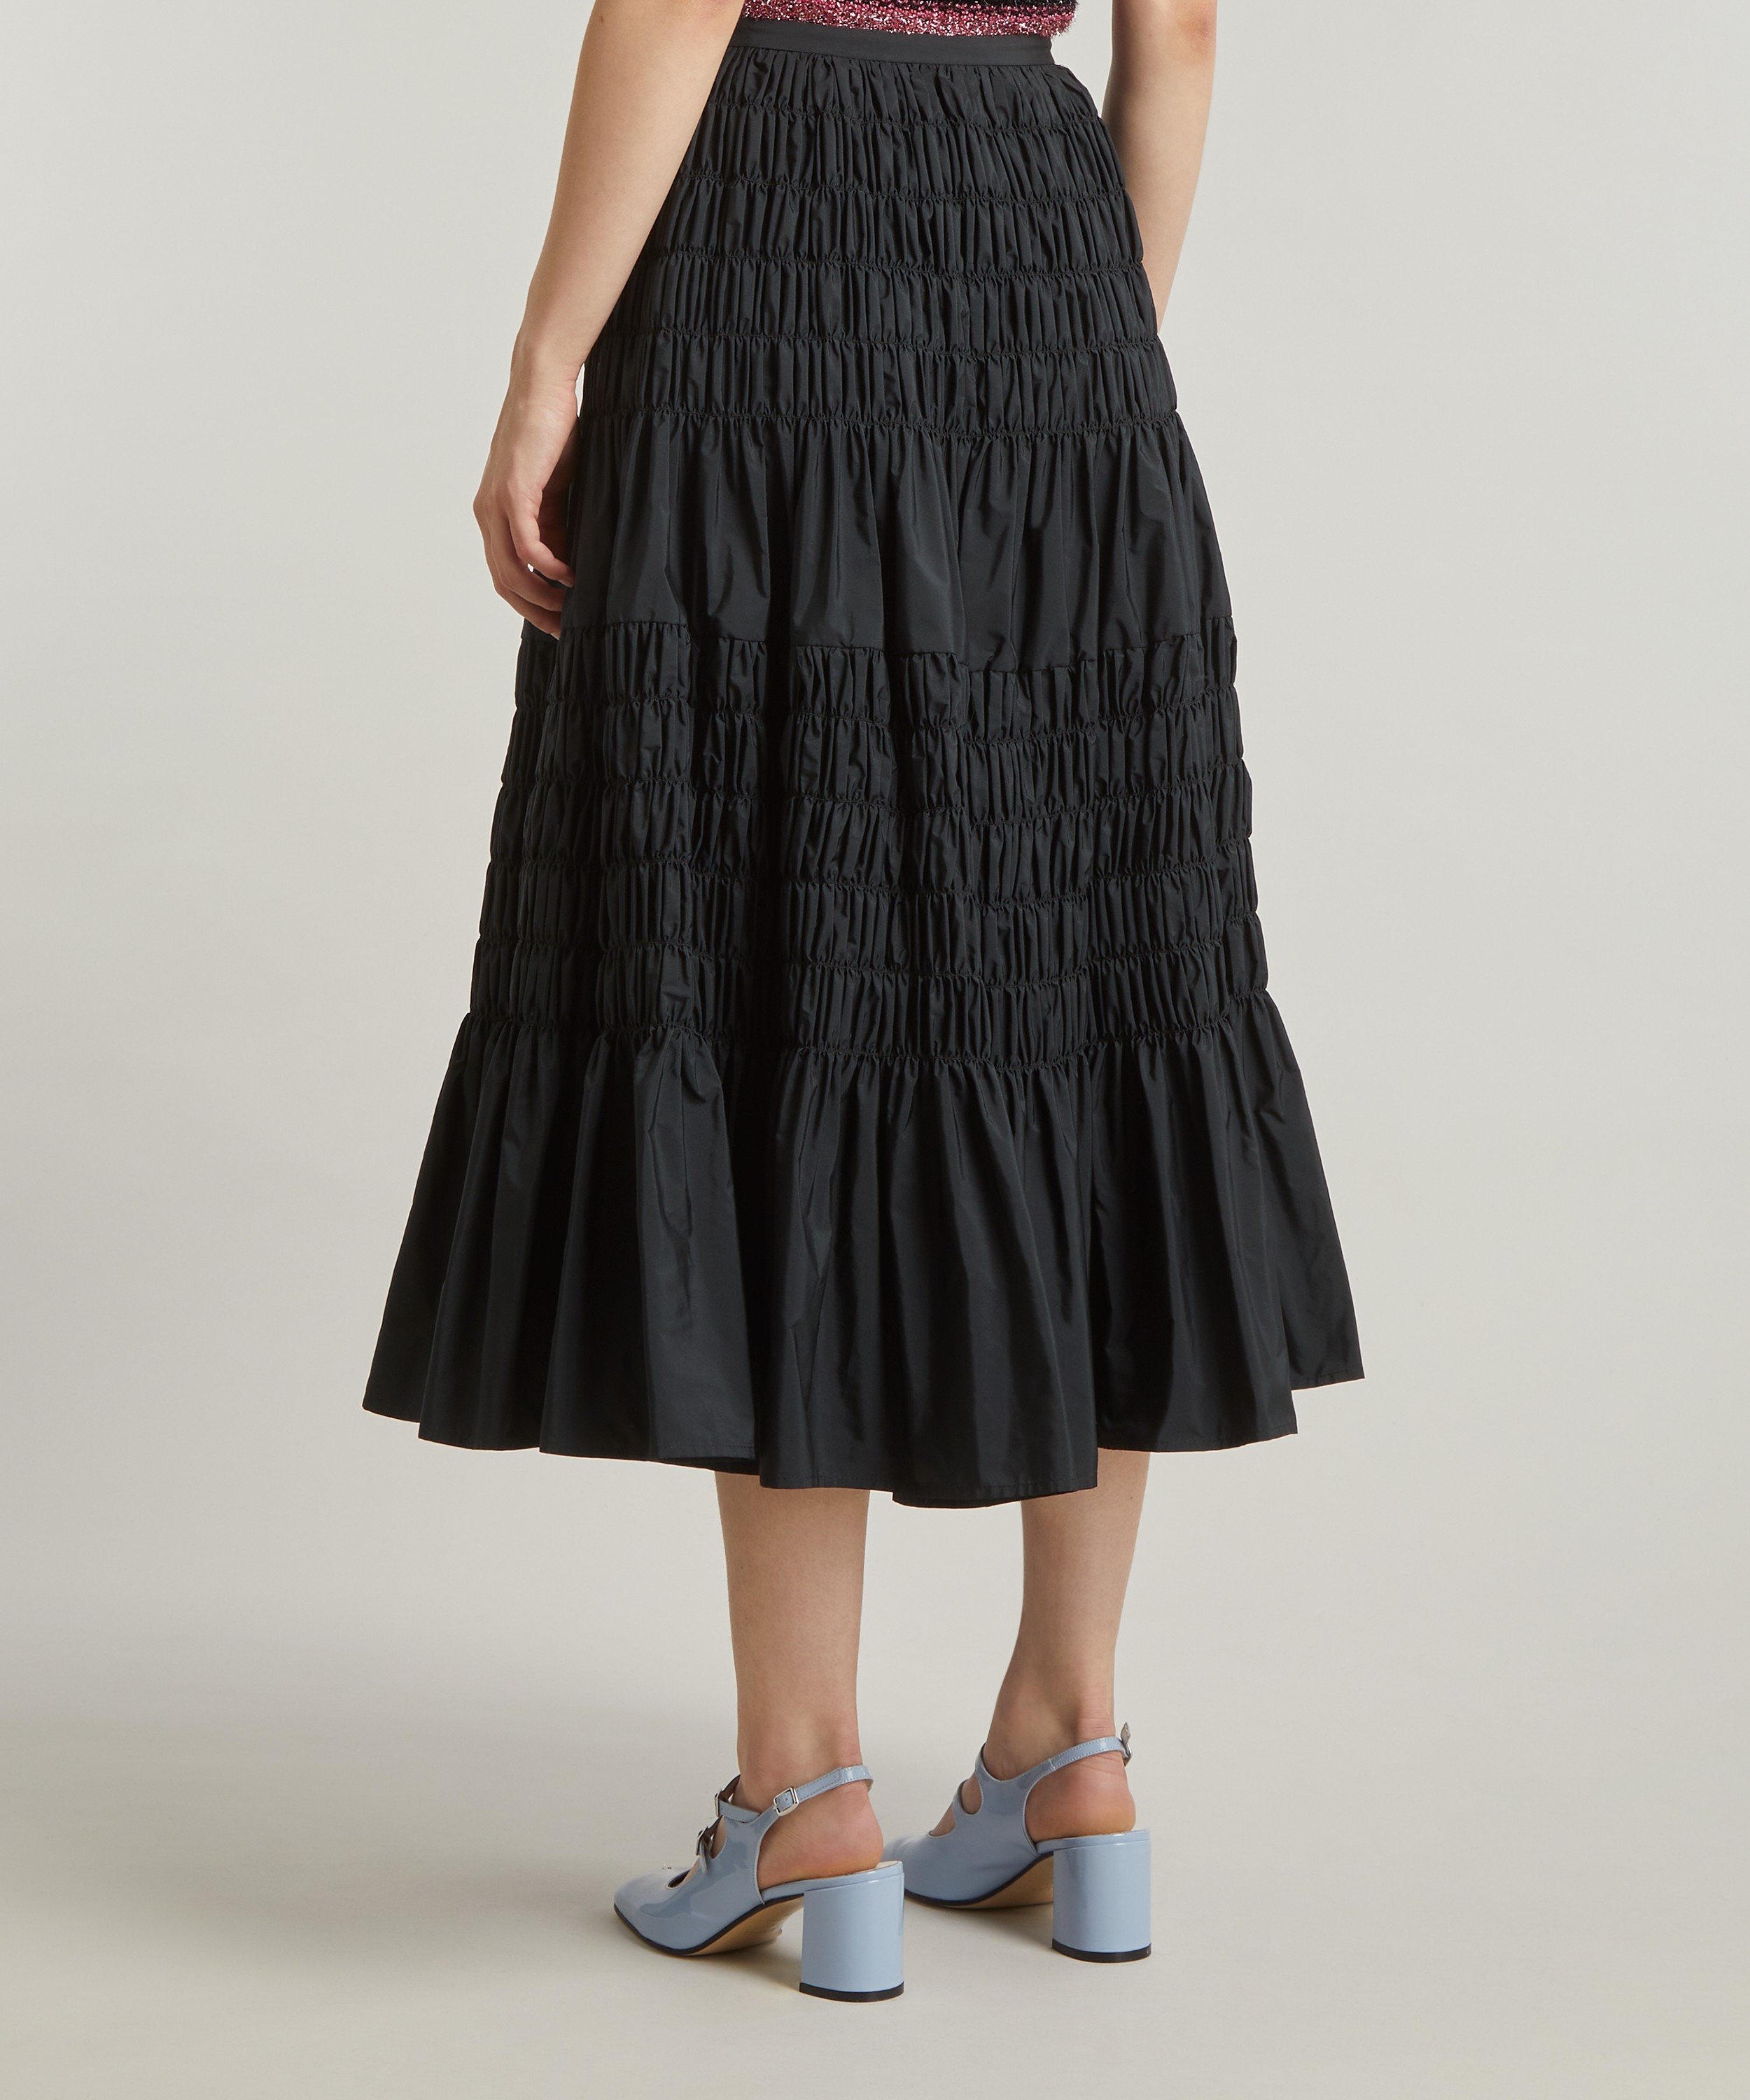 オンラインストア特売中 Louren design taffeta skirt - スカート